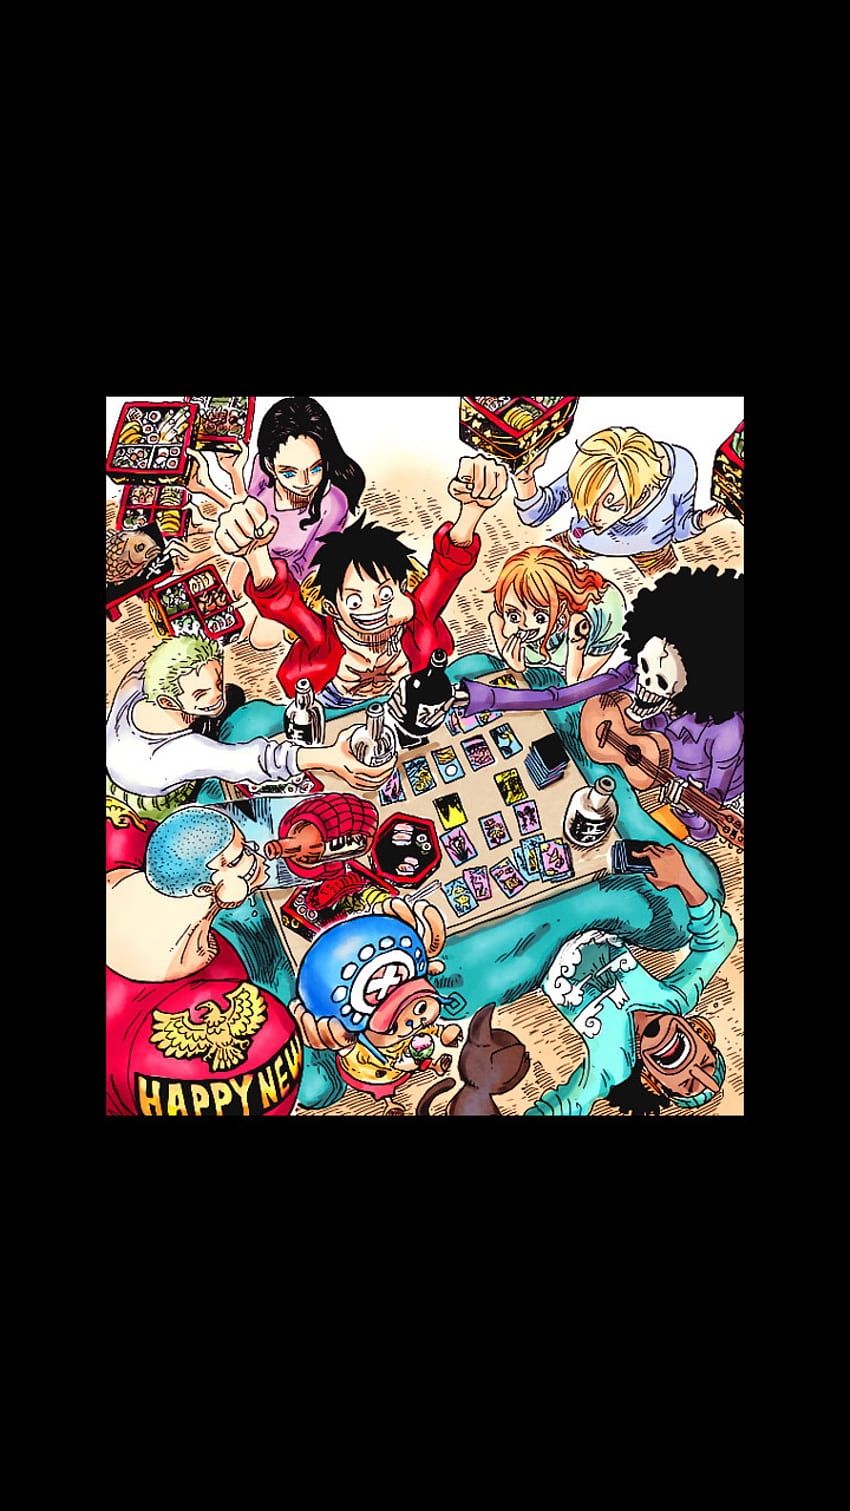 1366x768px, 720P Free download | One Piece, Franky, Sanji, Luffy, Ussop ...